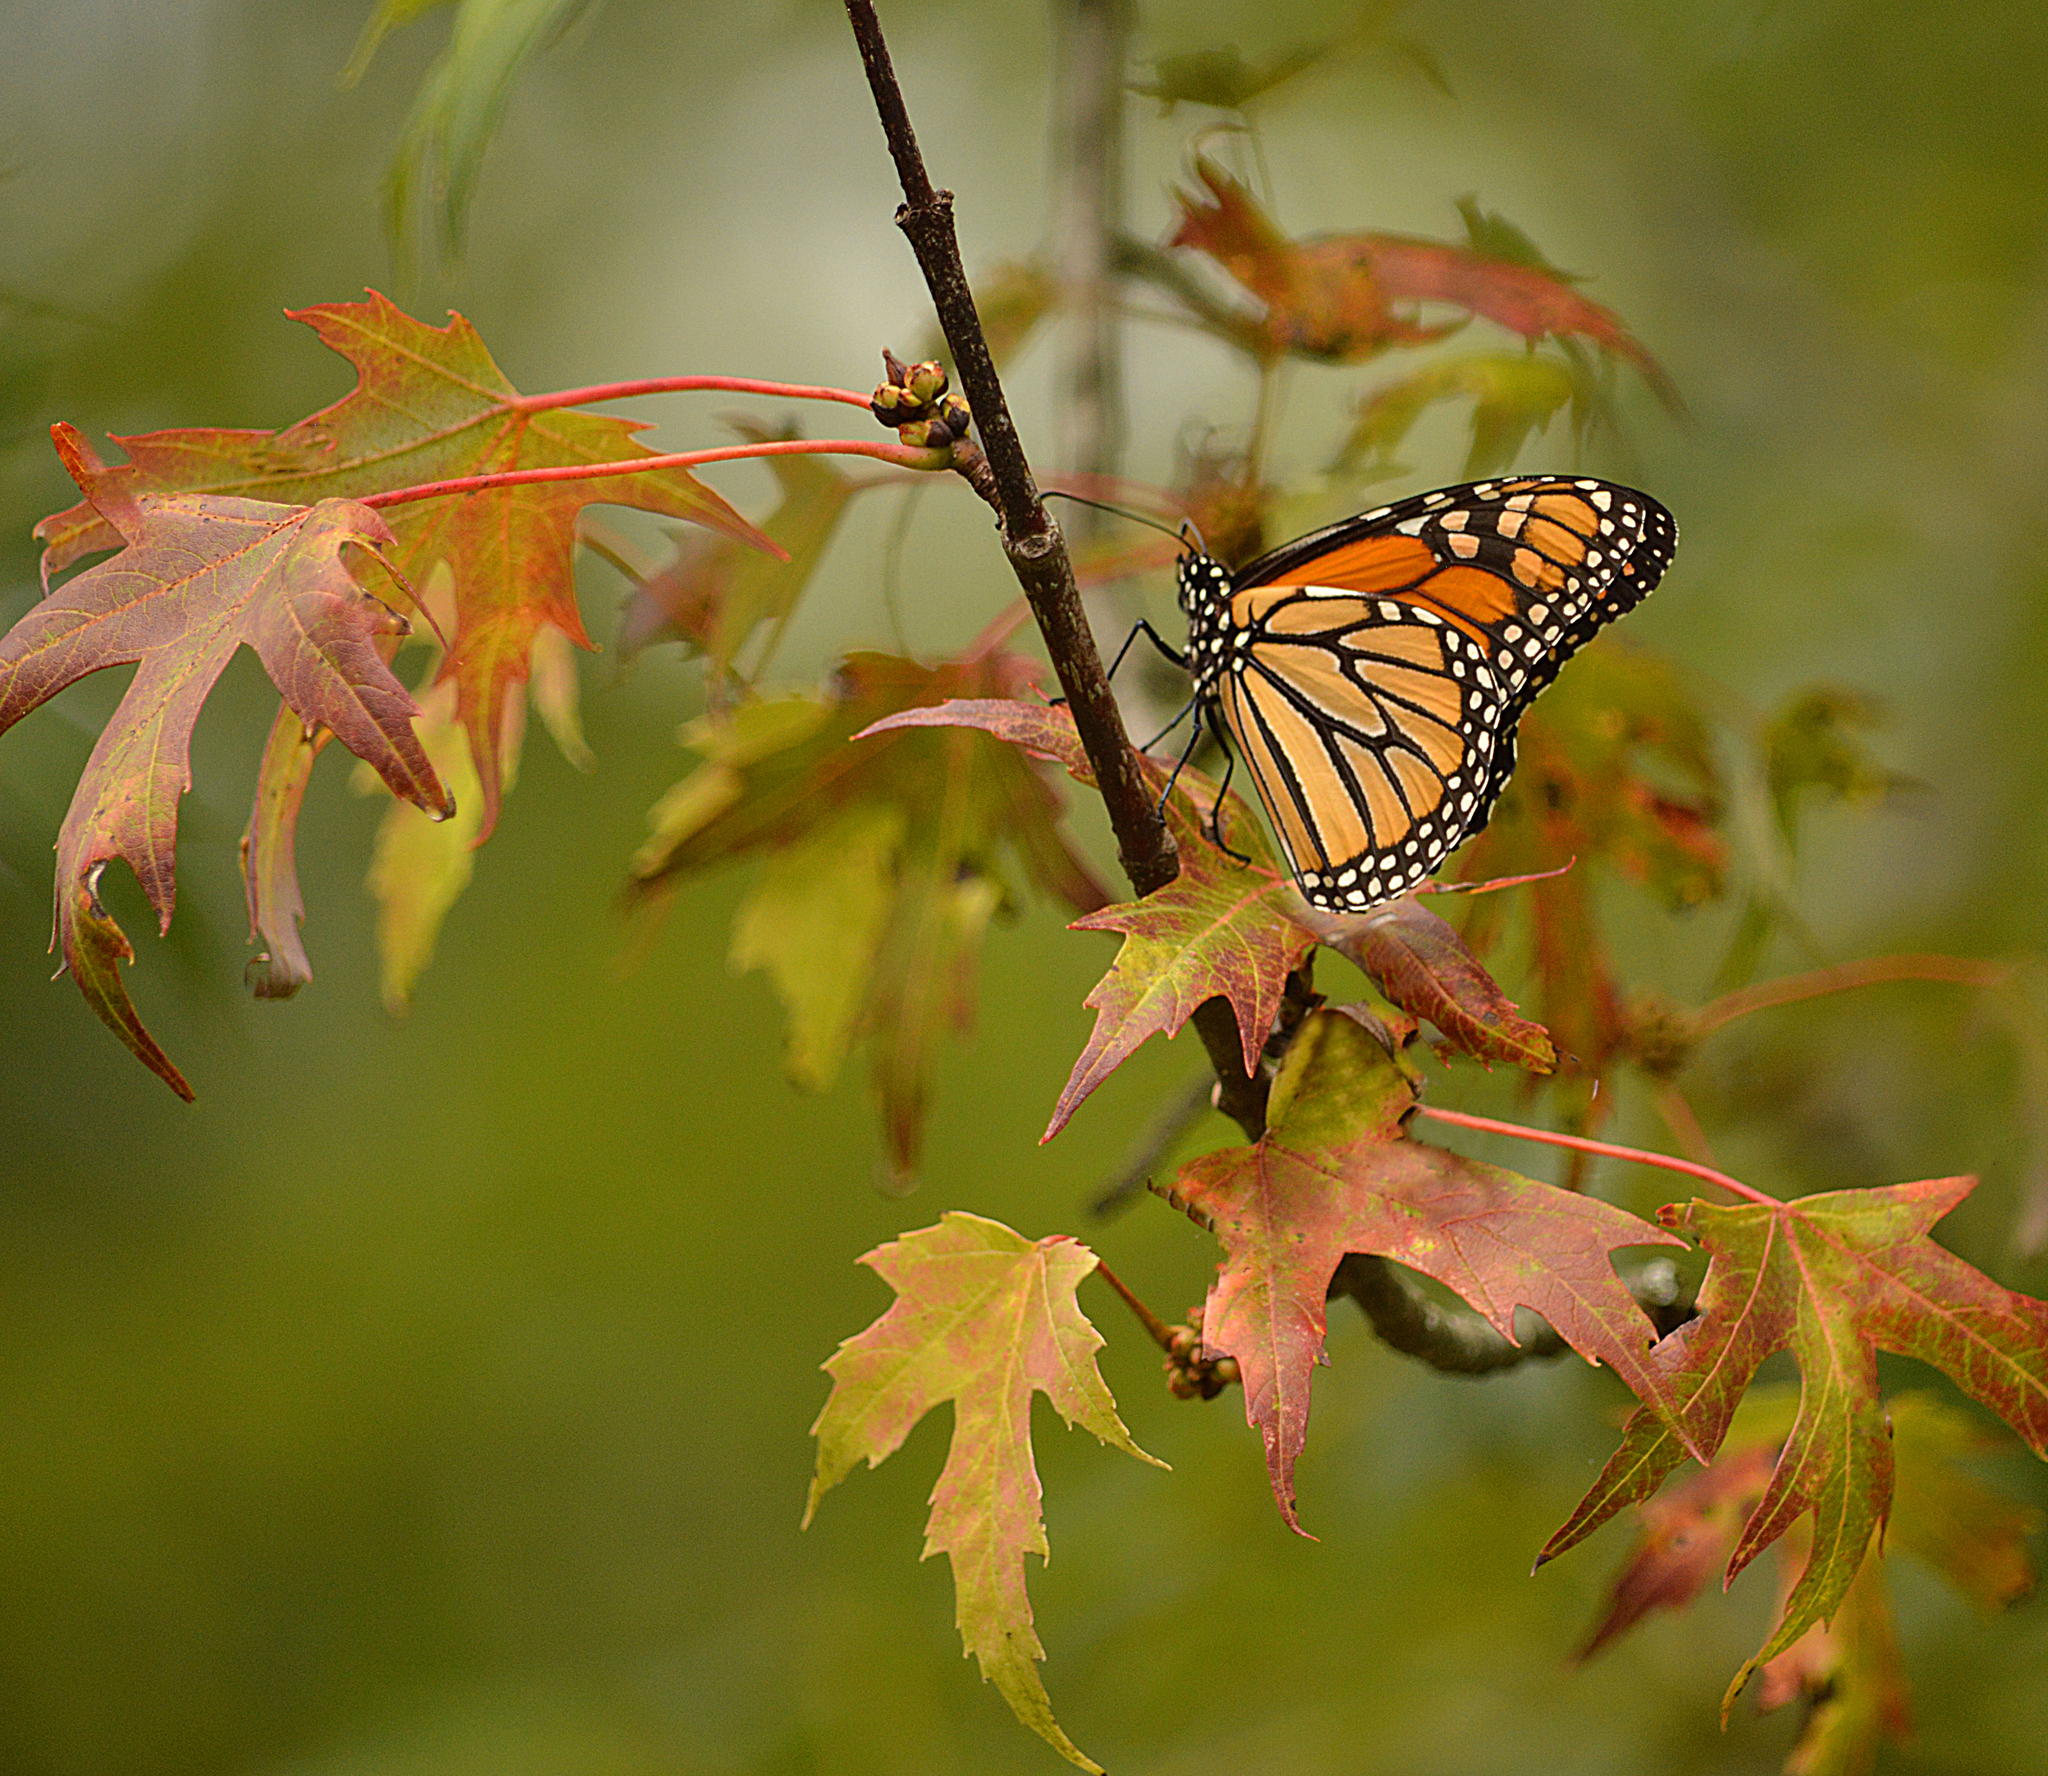 Monarch on a Colourful Leaf by Judy Tomlinson